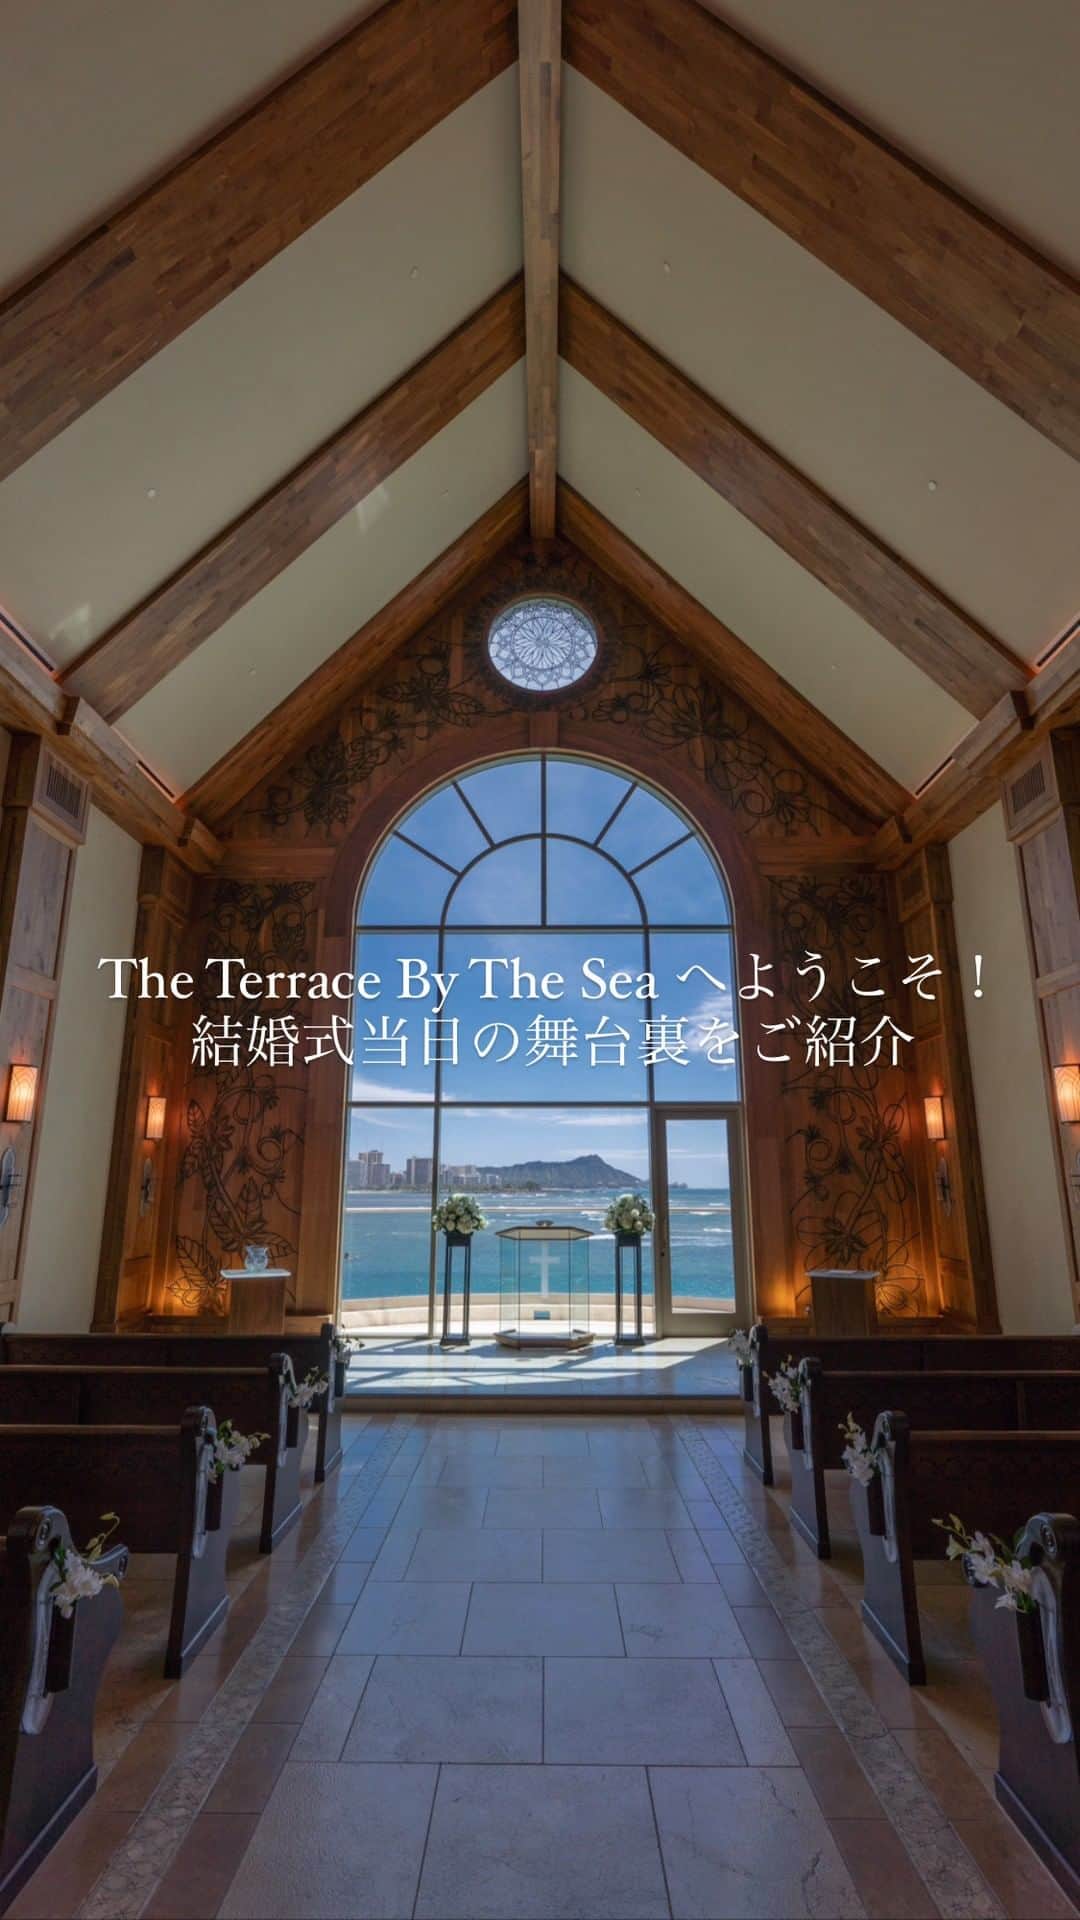 The Terrace By The Seaのインスタグラム：「@the_terrace_by_the_sea Hawaii Wedding情報はこちら𓂃𓈒𓏸  ---------  結婚式当日をサポートするスタッフたち𓈒𓏸  ザ・テラス バイ•ザ•シーを訪れる皆様に “最幸”の一日を過ごしていただけますように お手伝いさせていただきます𓍯  -------------------  = produce = モチーフ @motif_resort  --------------------  【Good News】アメリカ入国、ESTA申請のみでハワイ渡航可能になりました◎  ハワイのザ・テラス バイ・ザ・シーにて 挙式を検討されていらっしゃる方におすすめ✯  《30組限定　FIRST SUMMER PLAN 最大25.2万円 OFF！ 》〜6/30まで  挙式に必要な基本挙式、ドレス＆タキシード、新婦様ヘ アメイク、アルバムがセットになったお得プラン、通常価 格¥667,000→¥467,000にてご案内中！ パーティ4名以上お申し込みで、Grace of Aloha 2名様分 (¥52,000相当)プレゼント！  プロフィール欄のURLより、ウエディングの相談ご予約 が可能です。 小さい疑問や質問にもお答えいたしますので、お気軽に お問い合わせくださいませ🌺  ザ・テラス バイ・ザ・シーでは、健康と安全を最優先に 配慮し、安心してハワイでの時間を楽しんでいただいて おります𓆉  #テラスバイザシー #TheTerraceByTheSea #TAKAMIBRIDAL #タカミブライダル #MotifRESORT #テラス花嫁 #モチーフ花嫁 #リゾートウェディング #リゾート婚 #ハワイ挙式 #テラス花嫁  #結婚式場 #料理 #プレ花嫁」